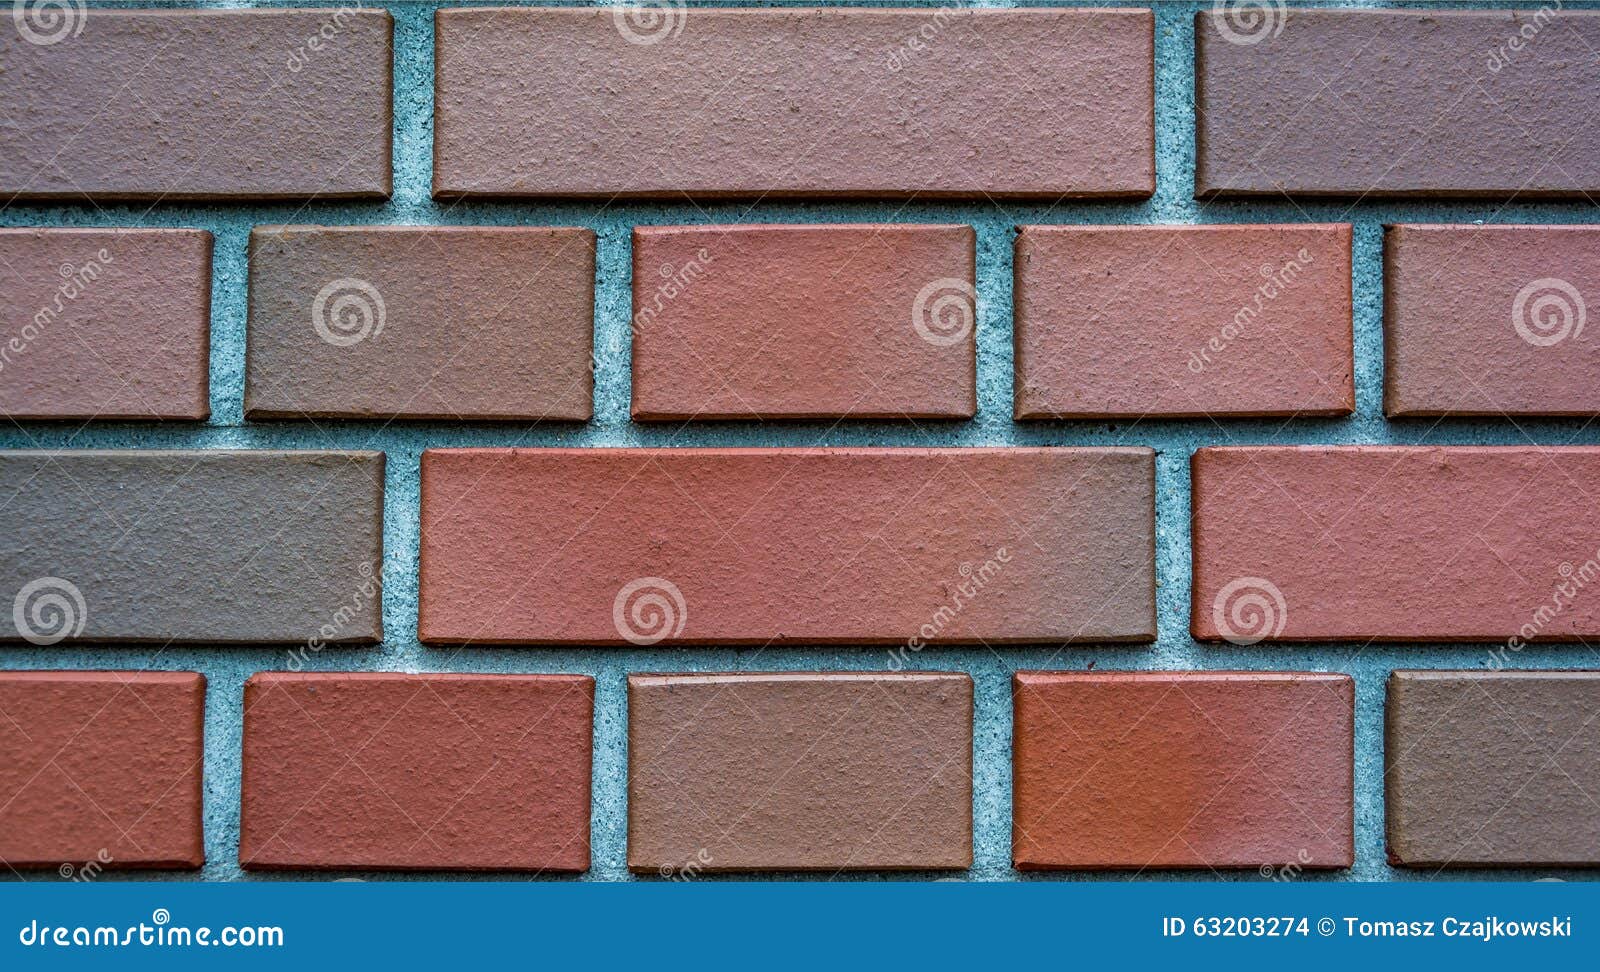 clinker bricks background, wallpaper, texture